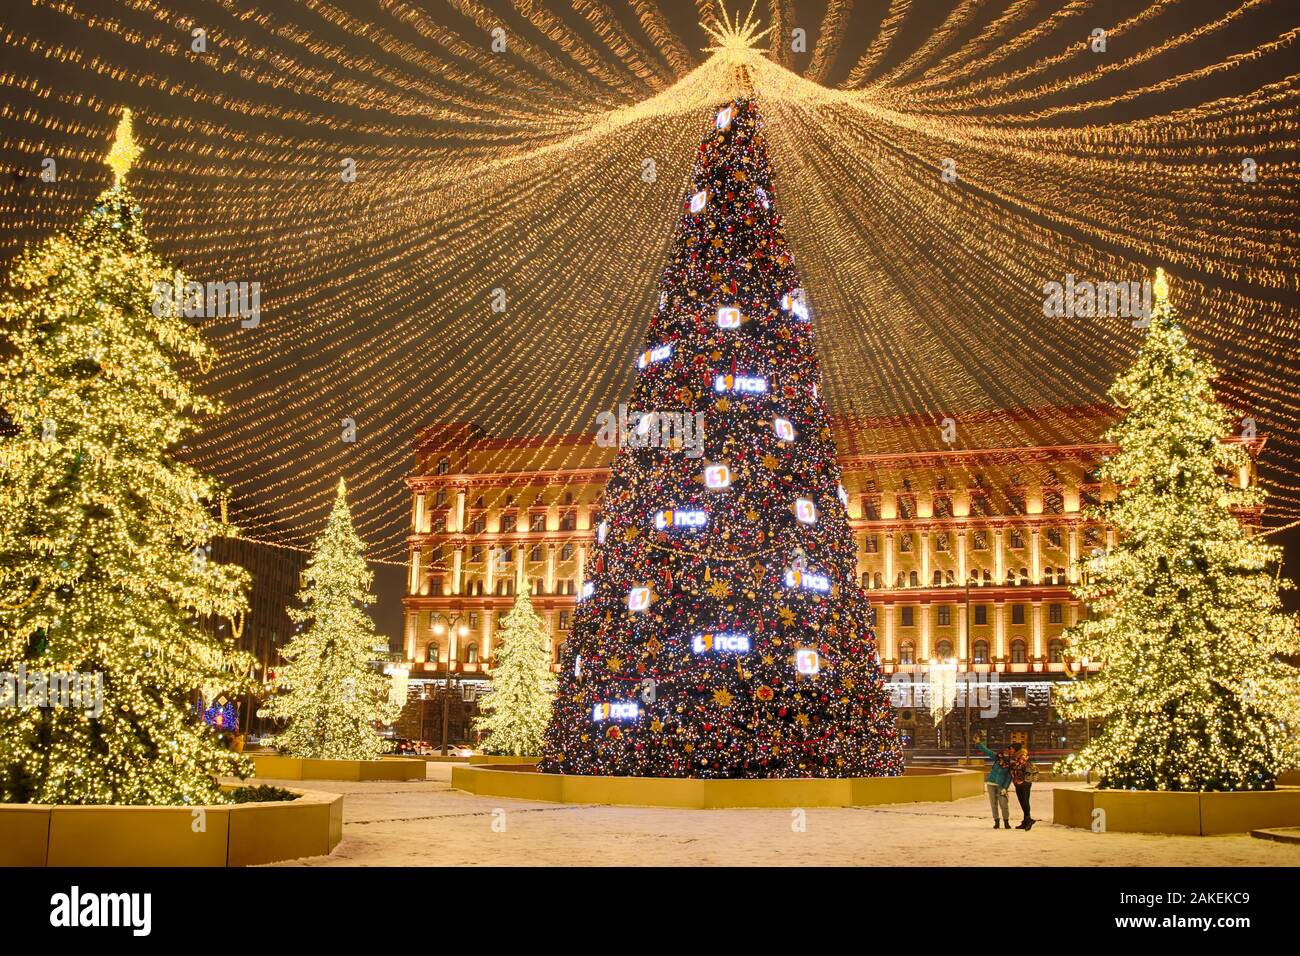 = Des arbres de Noël illuminés sous tente sur la nuit Loubianka  = les arbres de Noël sous un chapiteau illuminé de guirlandes remplies avec des milliers de conduit Banque D'Images